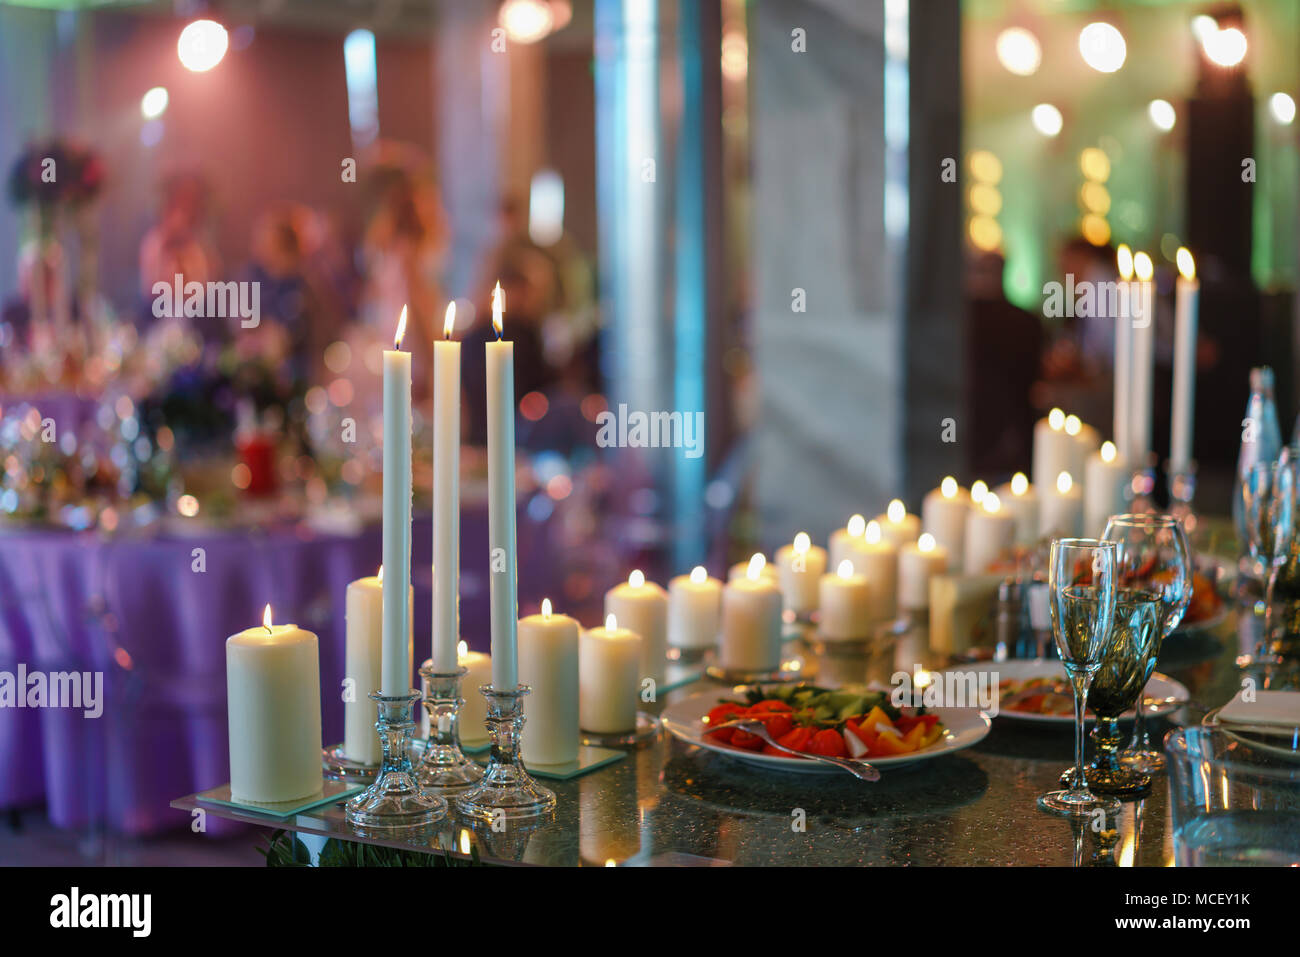 Brennende Kerze. Weiße Kerzen auf Glas Leuchter stehen auf den Tischen im  luxuriösen Hochzeitsempfang in Restaurant. Stilvolle Einrichtung und  Schmücken Stockfotografie - Alamy